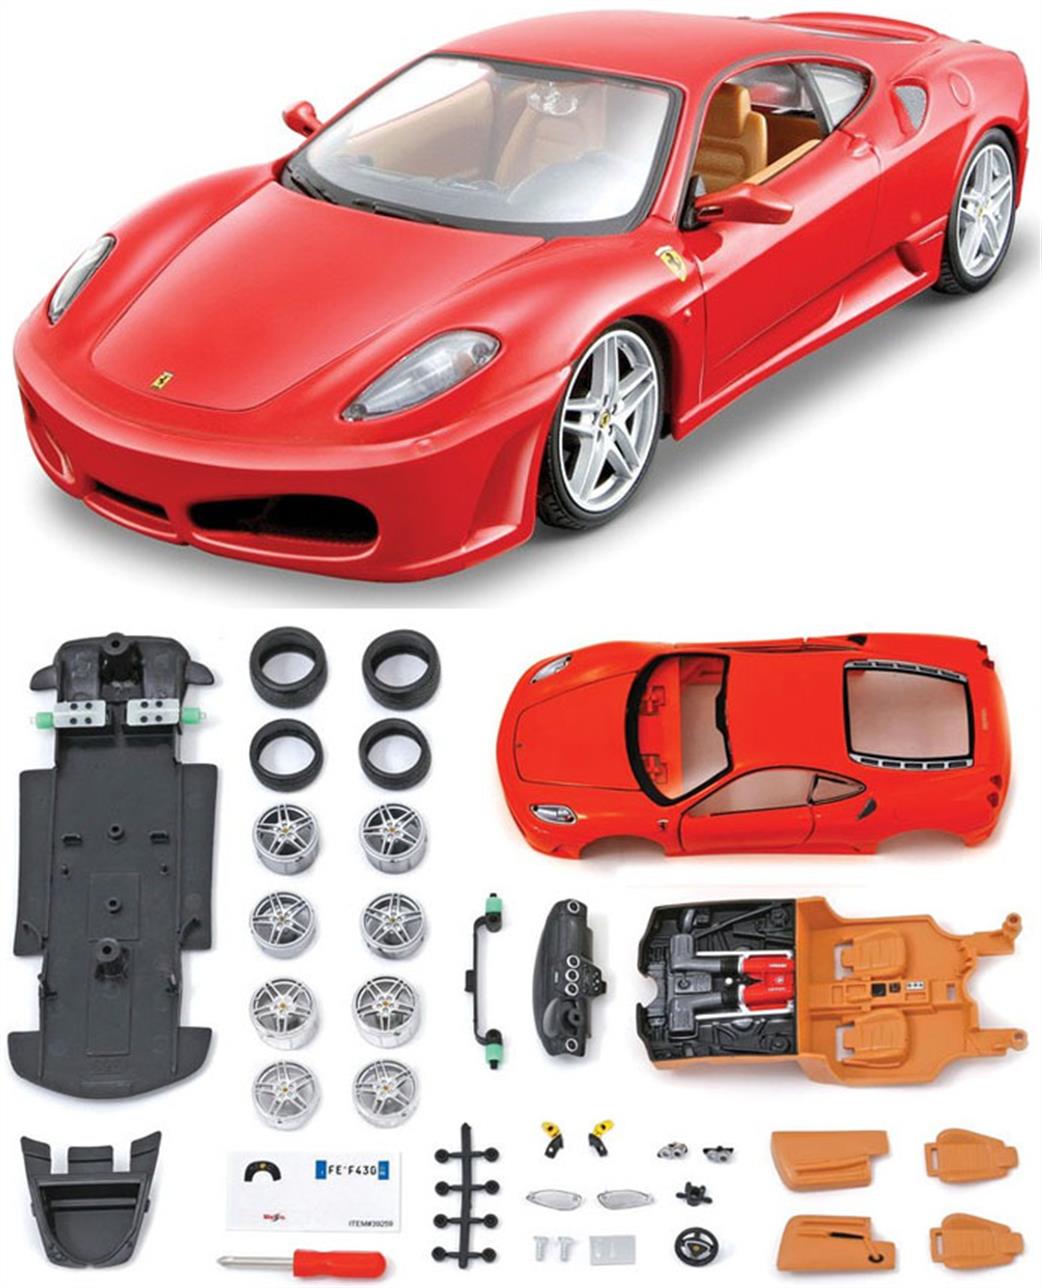 Maisto 1/24 39259 Ferrari F430 Red Diecast Kit